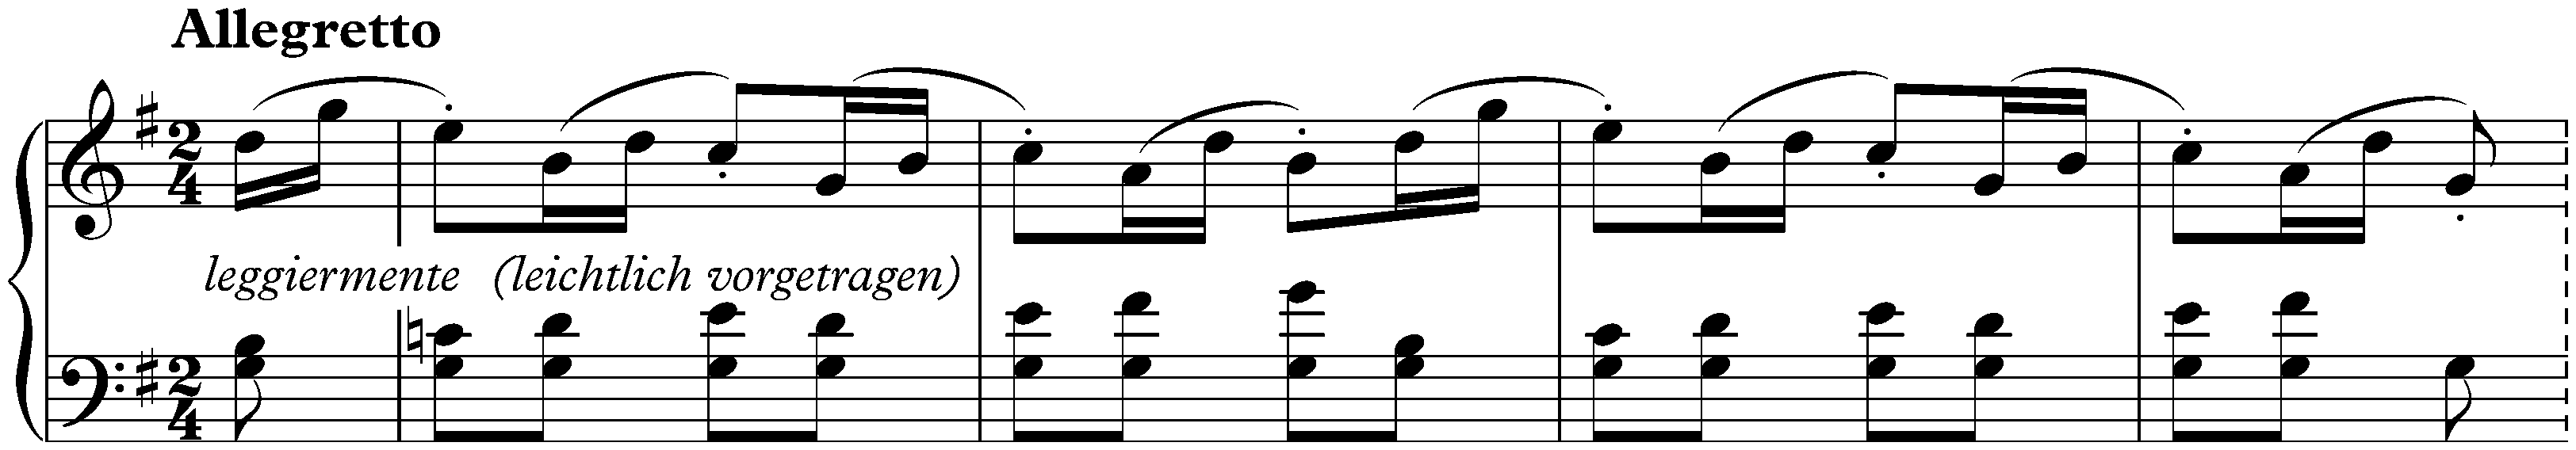 Eleven Bagatelles, op. 119; 6. G major